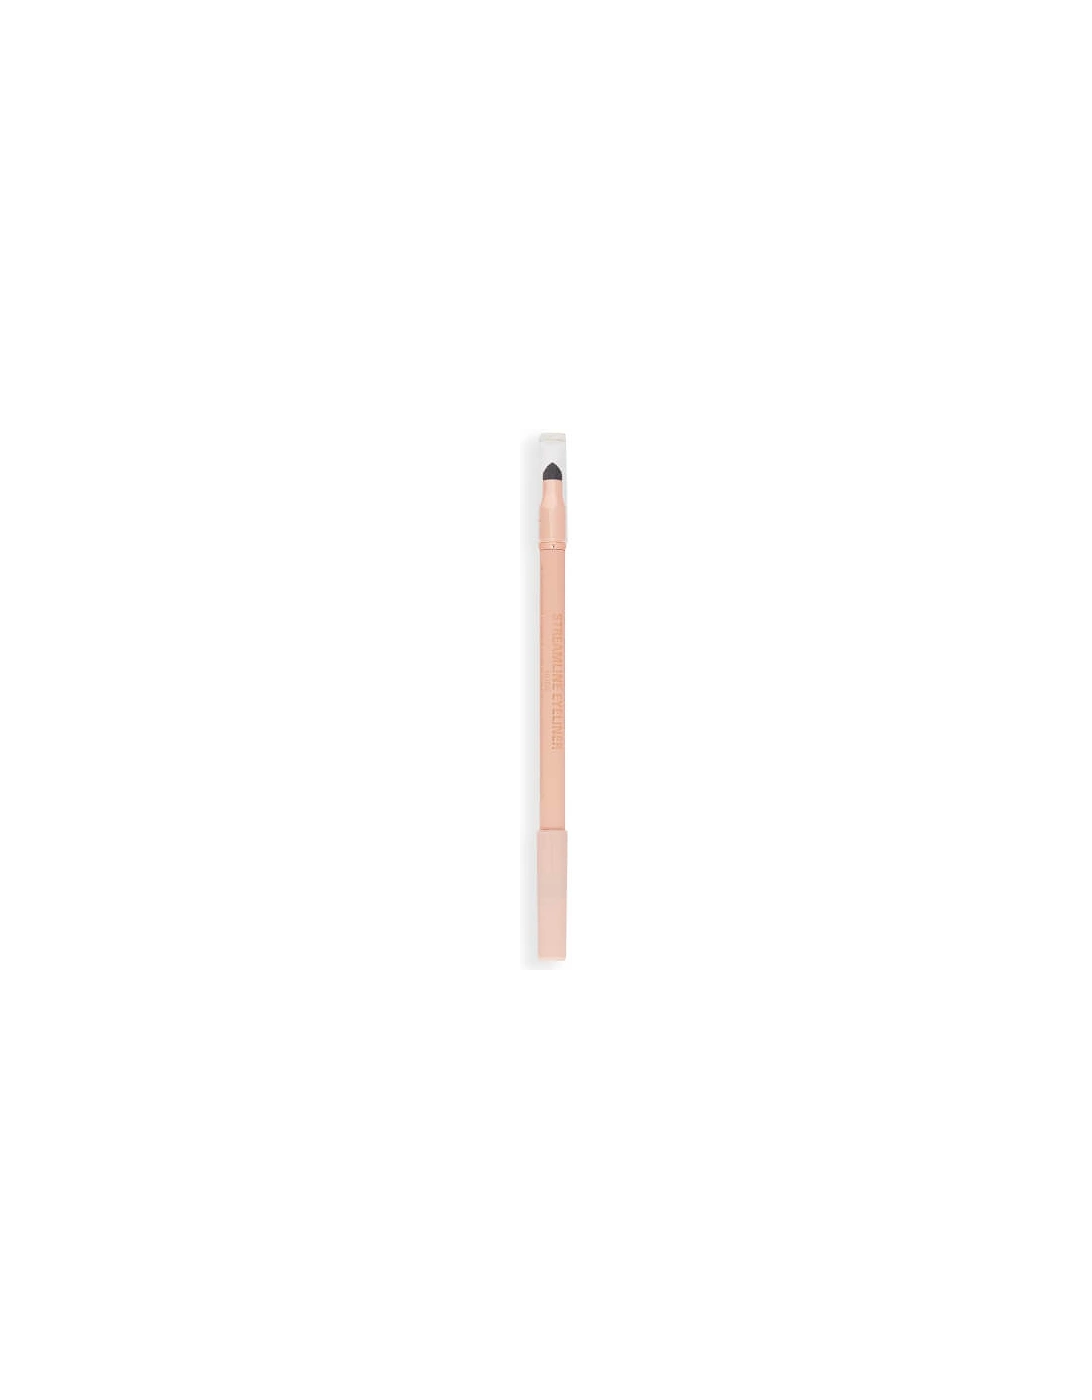 Makeup Streamline Waterline Eyeliner Pencil - Nude, 2 of 1